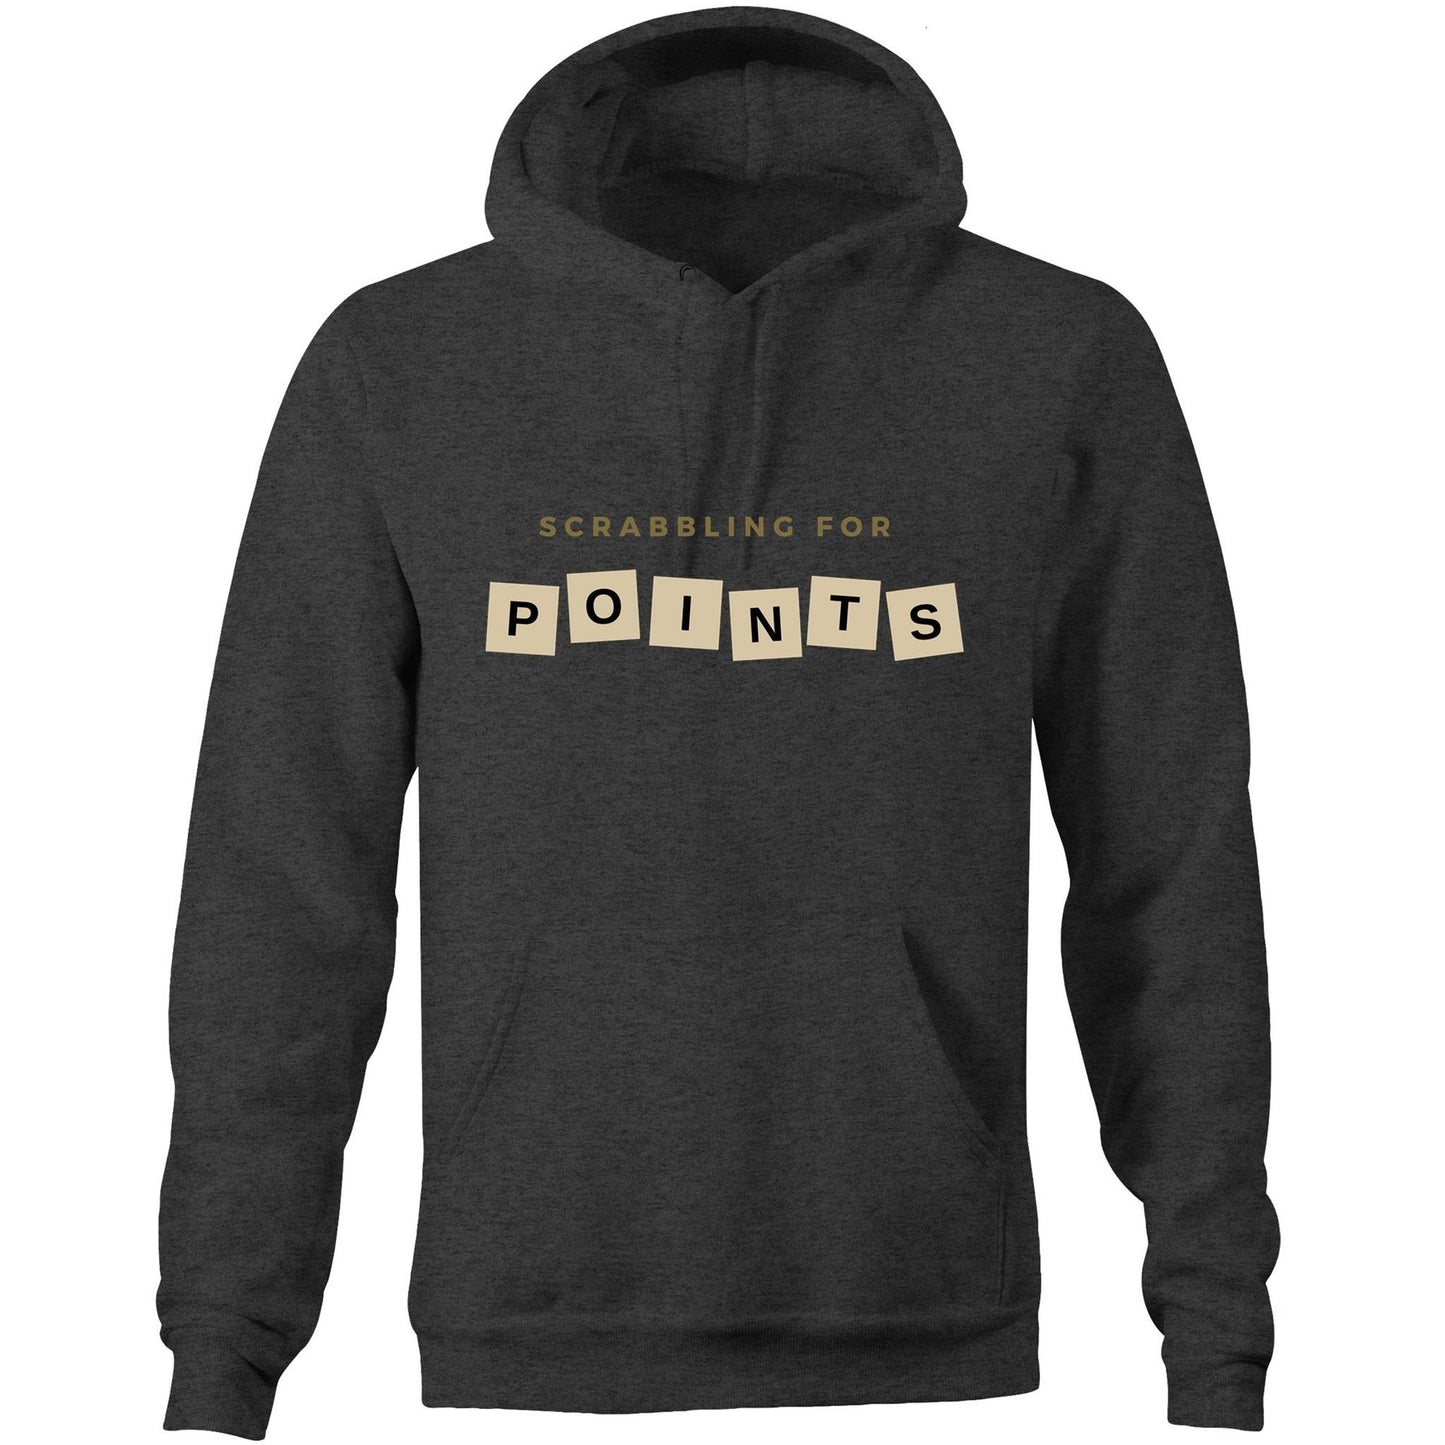 Scrabbling For Points - Pocket Hoodie Sweatshirt Asphalt Marle Hoodie Games